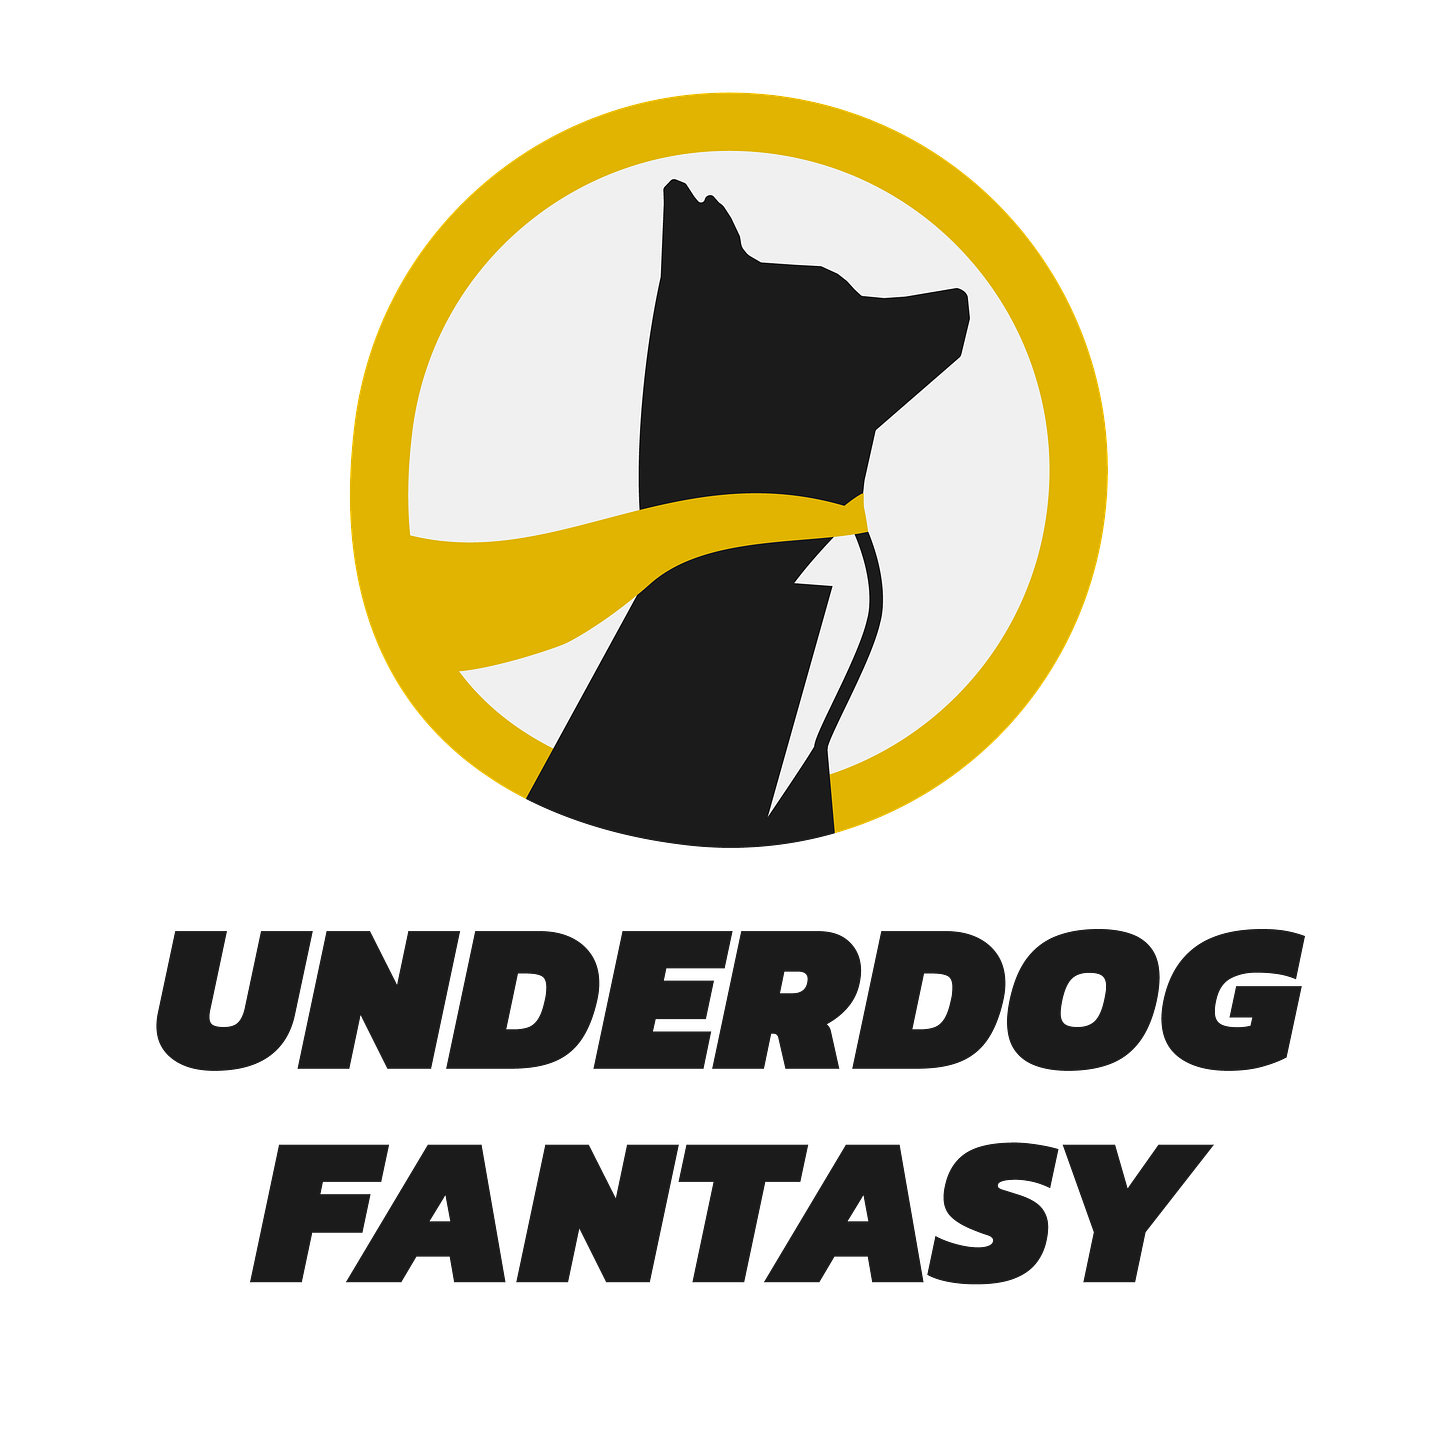 Underdog Fantasy logo sponsorship